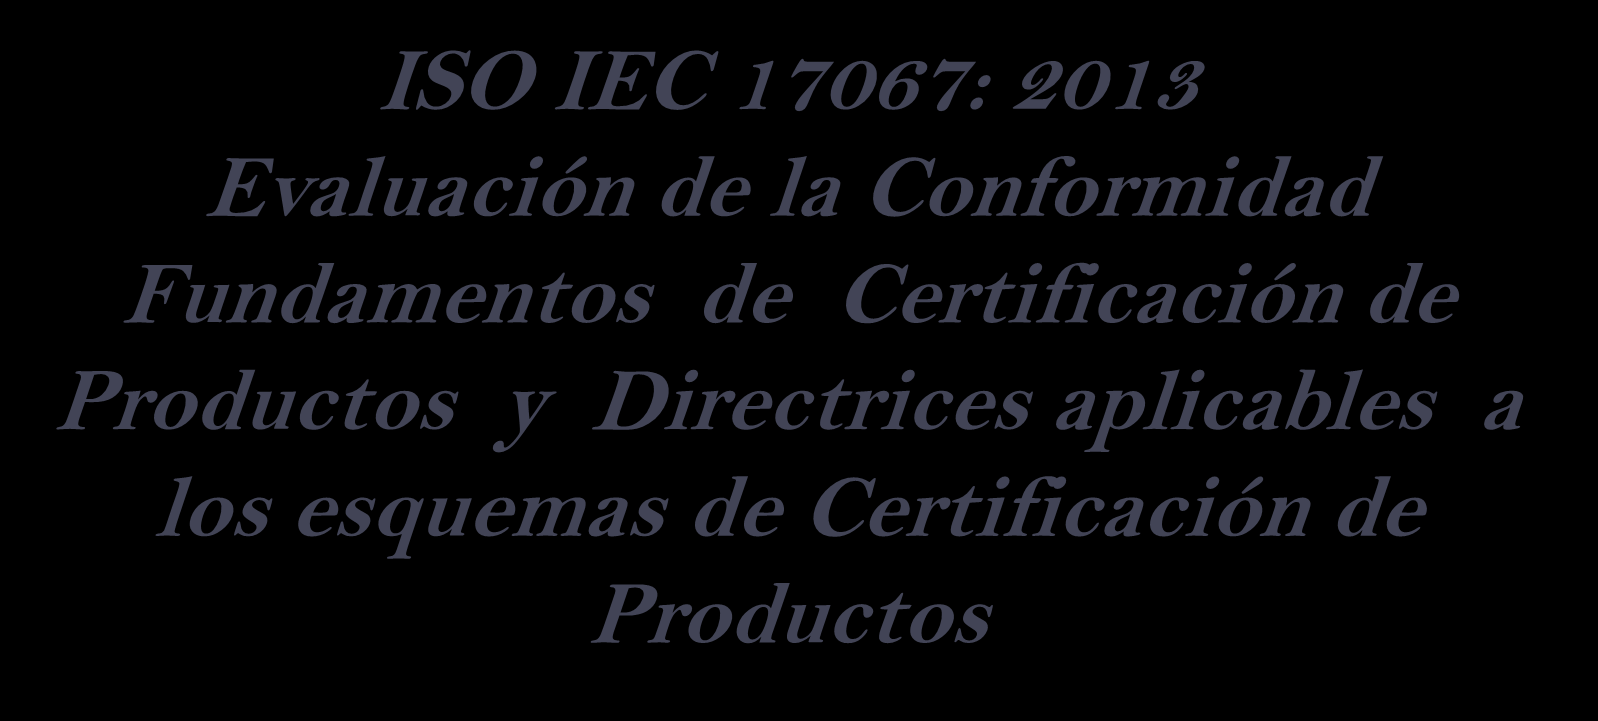 ISO IEC 17067: 2013 Evaluación de la Conformidad Fundamentos de Certificación